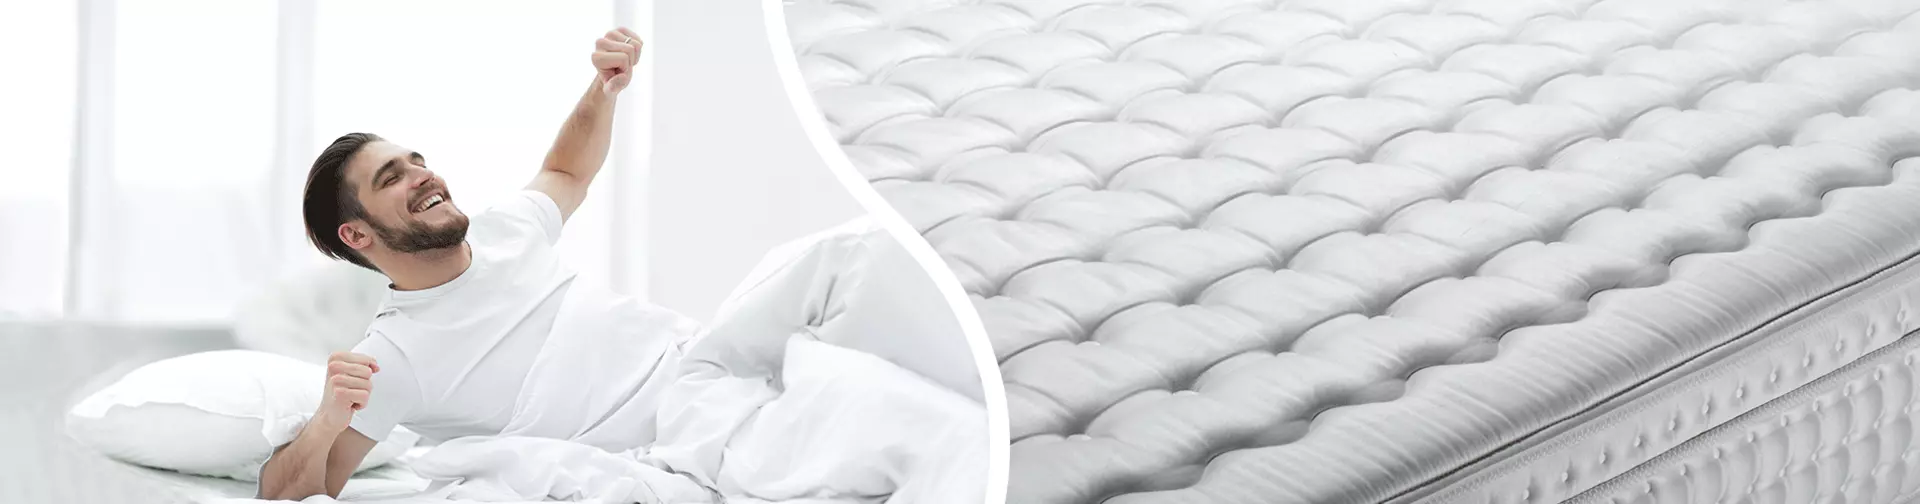 Ideale Schlafgrundlage - der Möbel Inhofer Matratzenratgeber